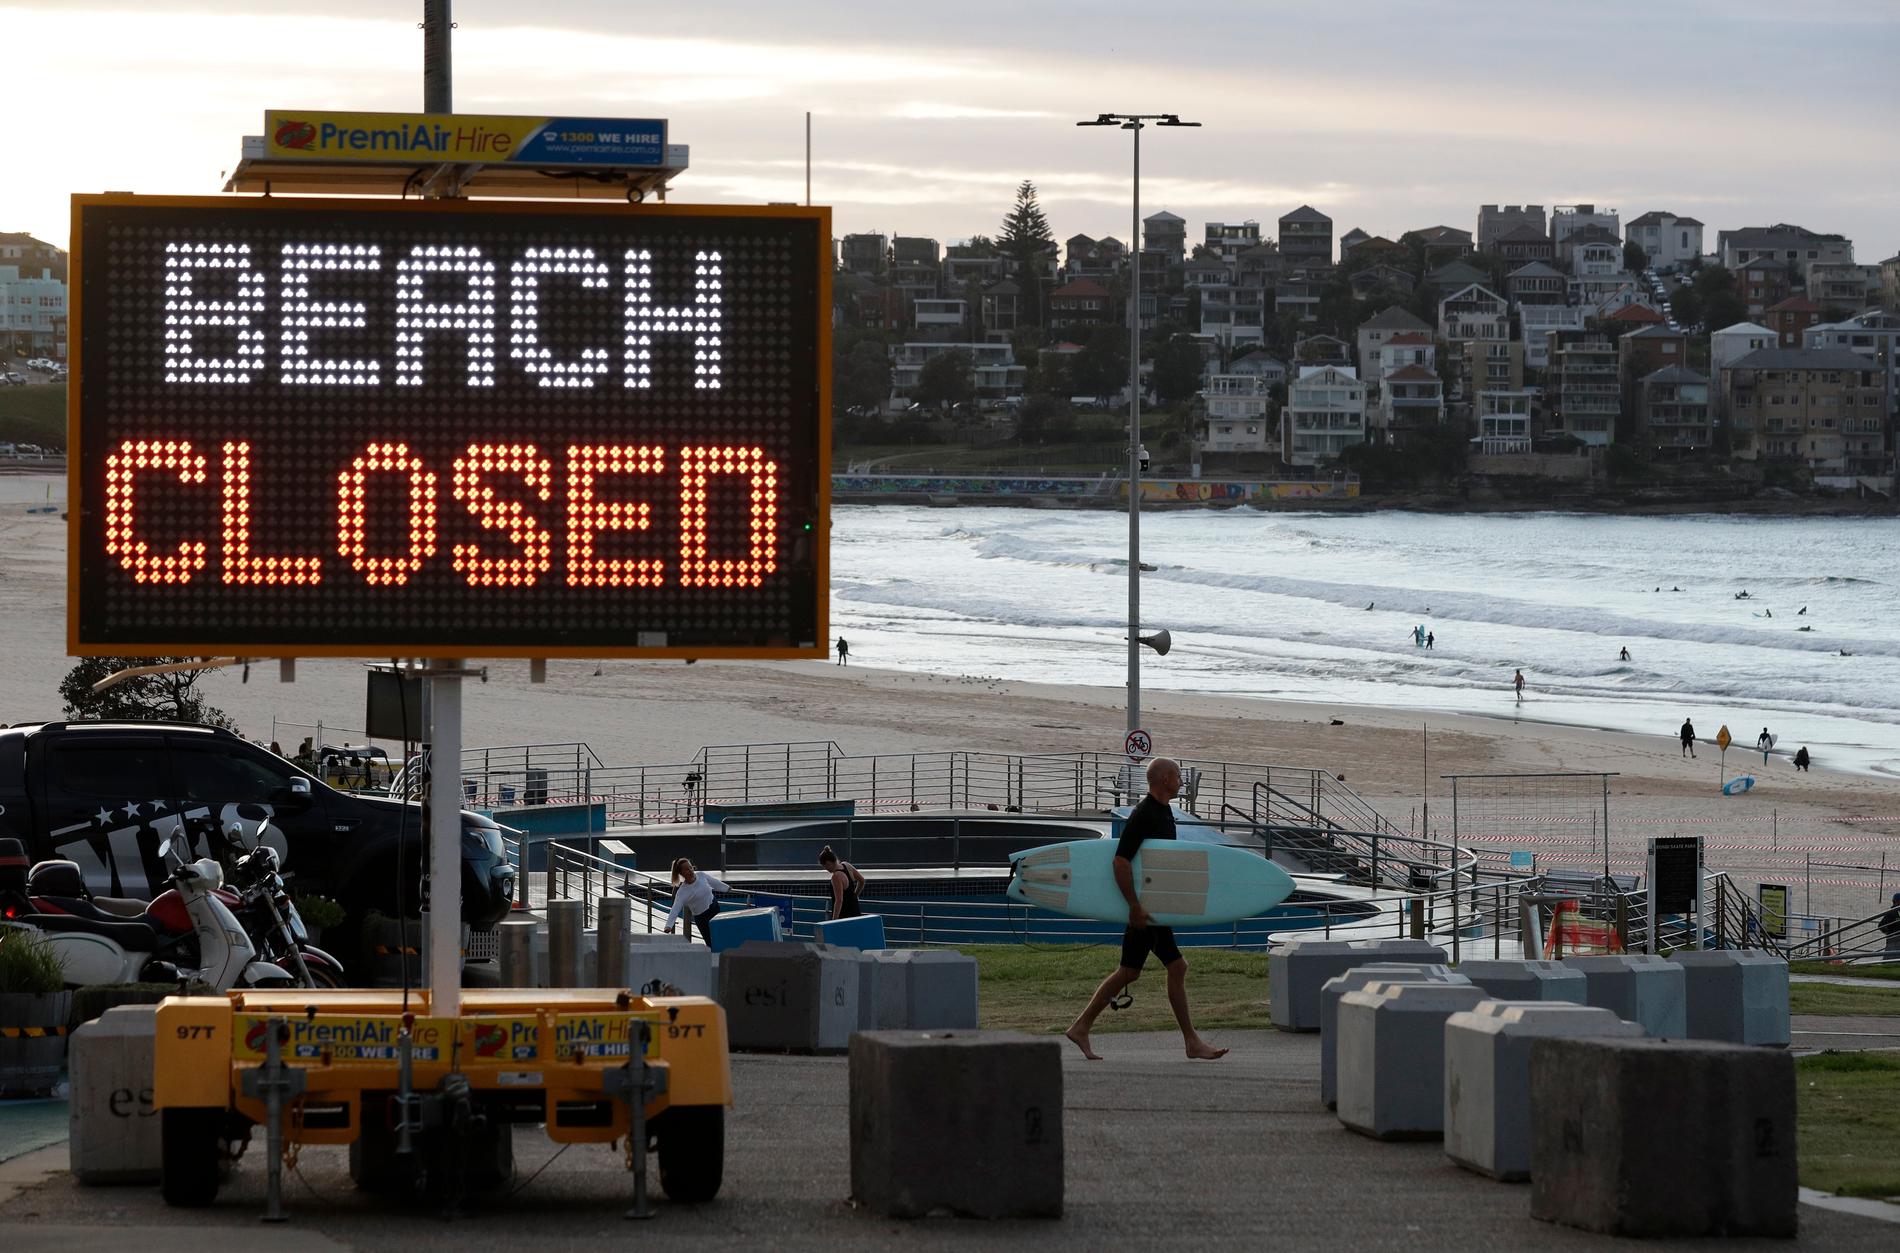 Bondi Beach i Sydney stängdes liksom de flesta andra stränder i landet på grund av coronapandemin. Arkivbild.